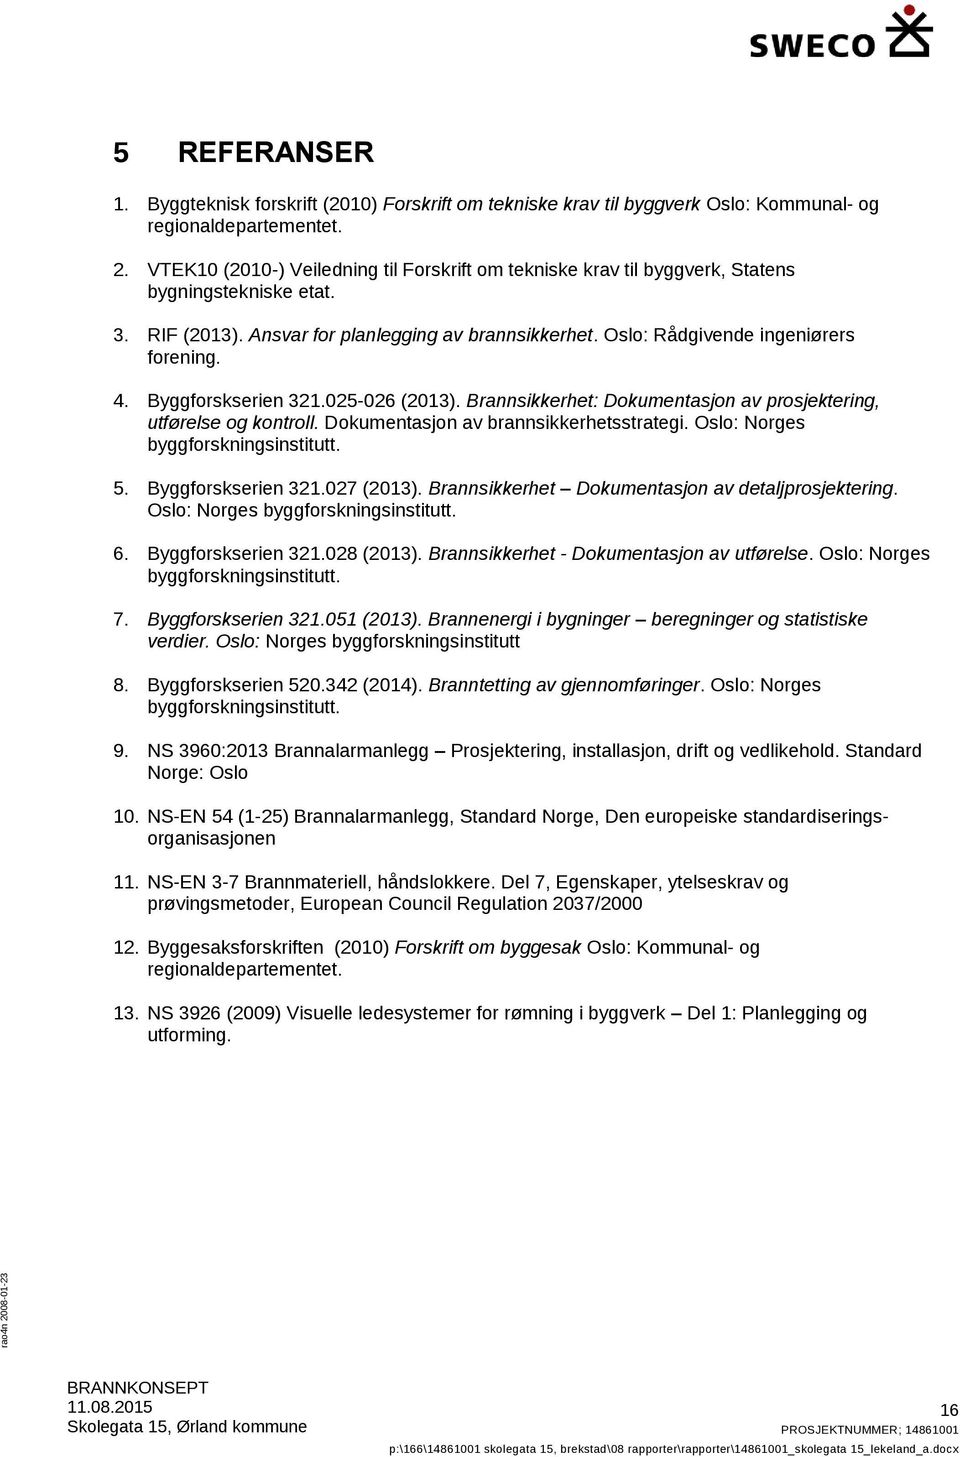 Byggforskserien 321.025-026 (2013). Brannsikkerhet: Dokumentasjon av prosjektering, utførelse og kontroll. Dokumentasjon av brannsikkerhetsstrategi. Oslo: Norges byggforskningsinstitutt. 5.